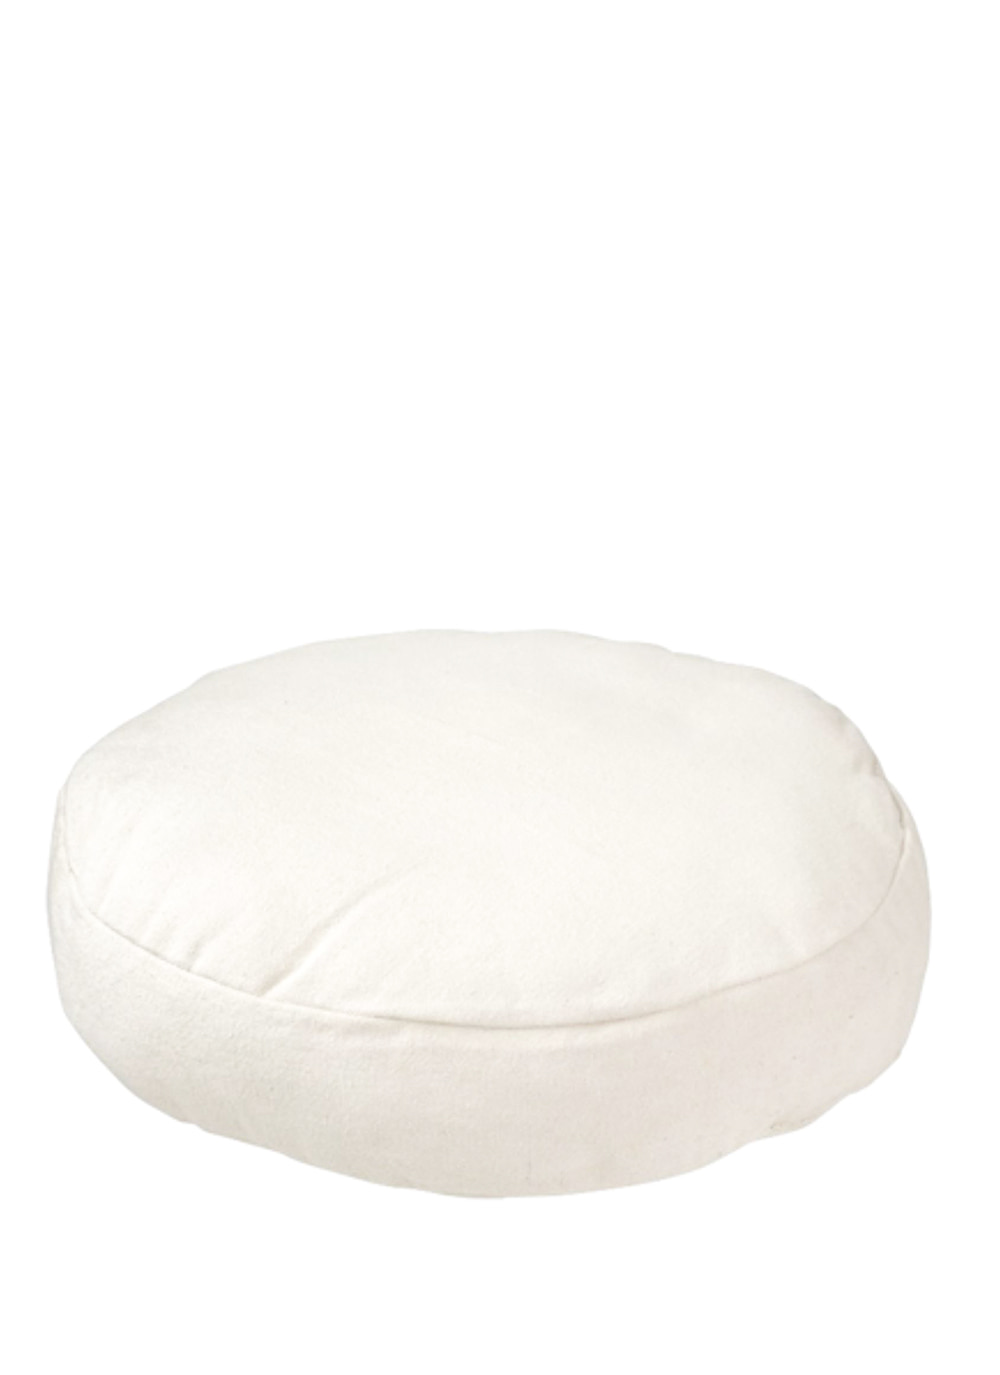 Cushion Round Cotton White